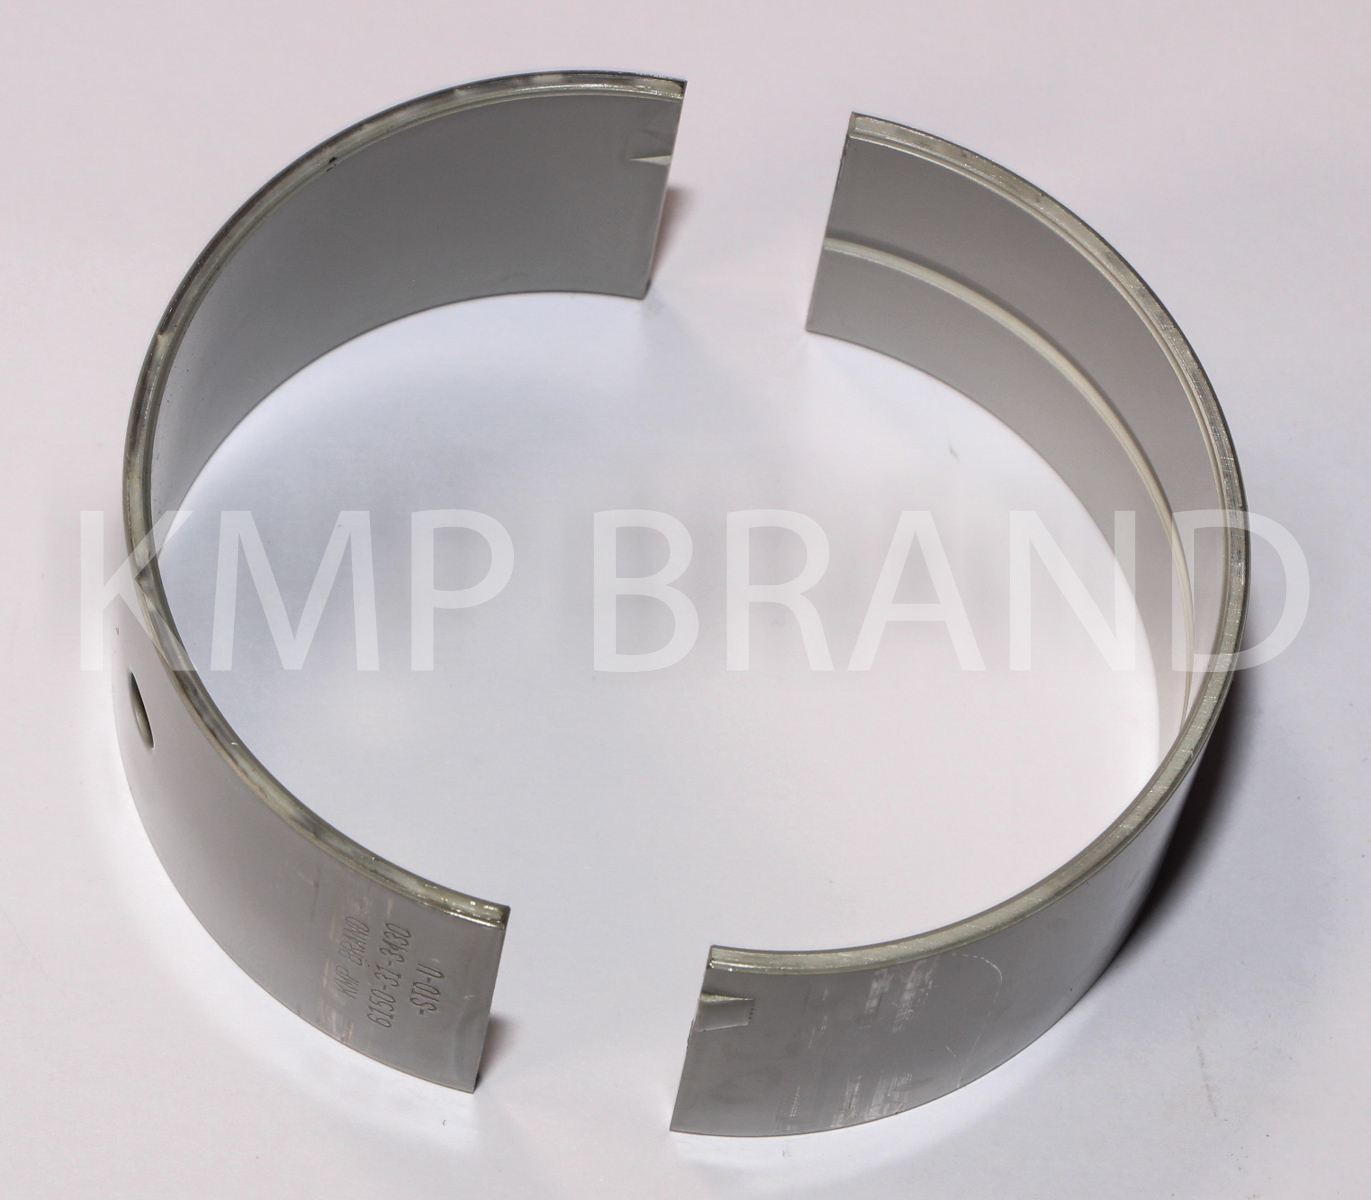 Rod bearing KMP 6151-31-3050